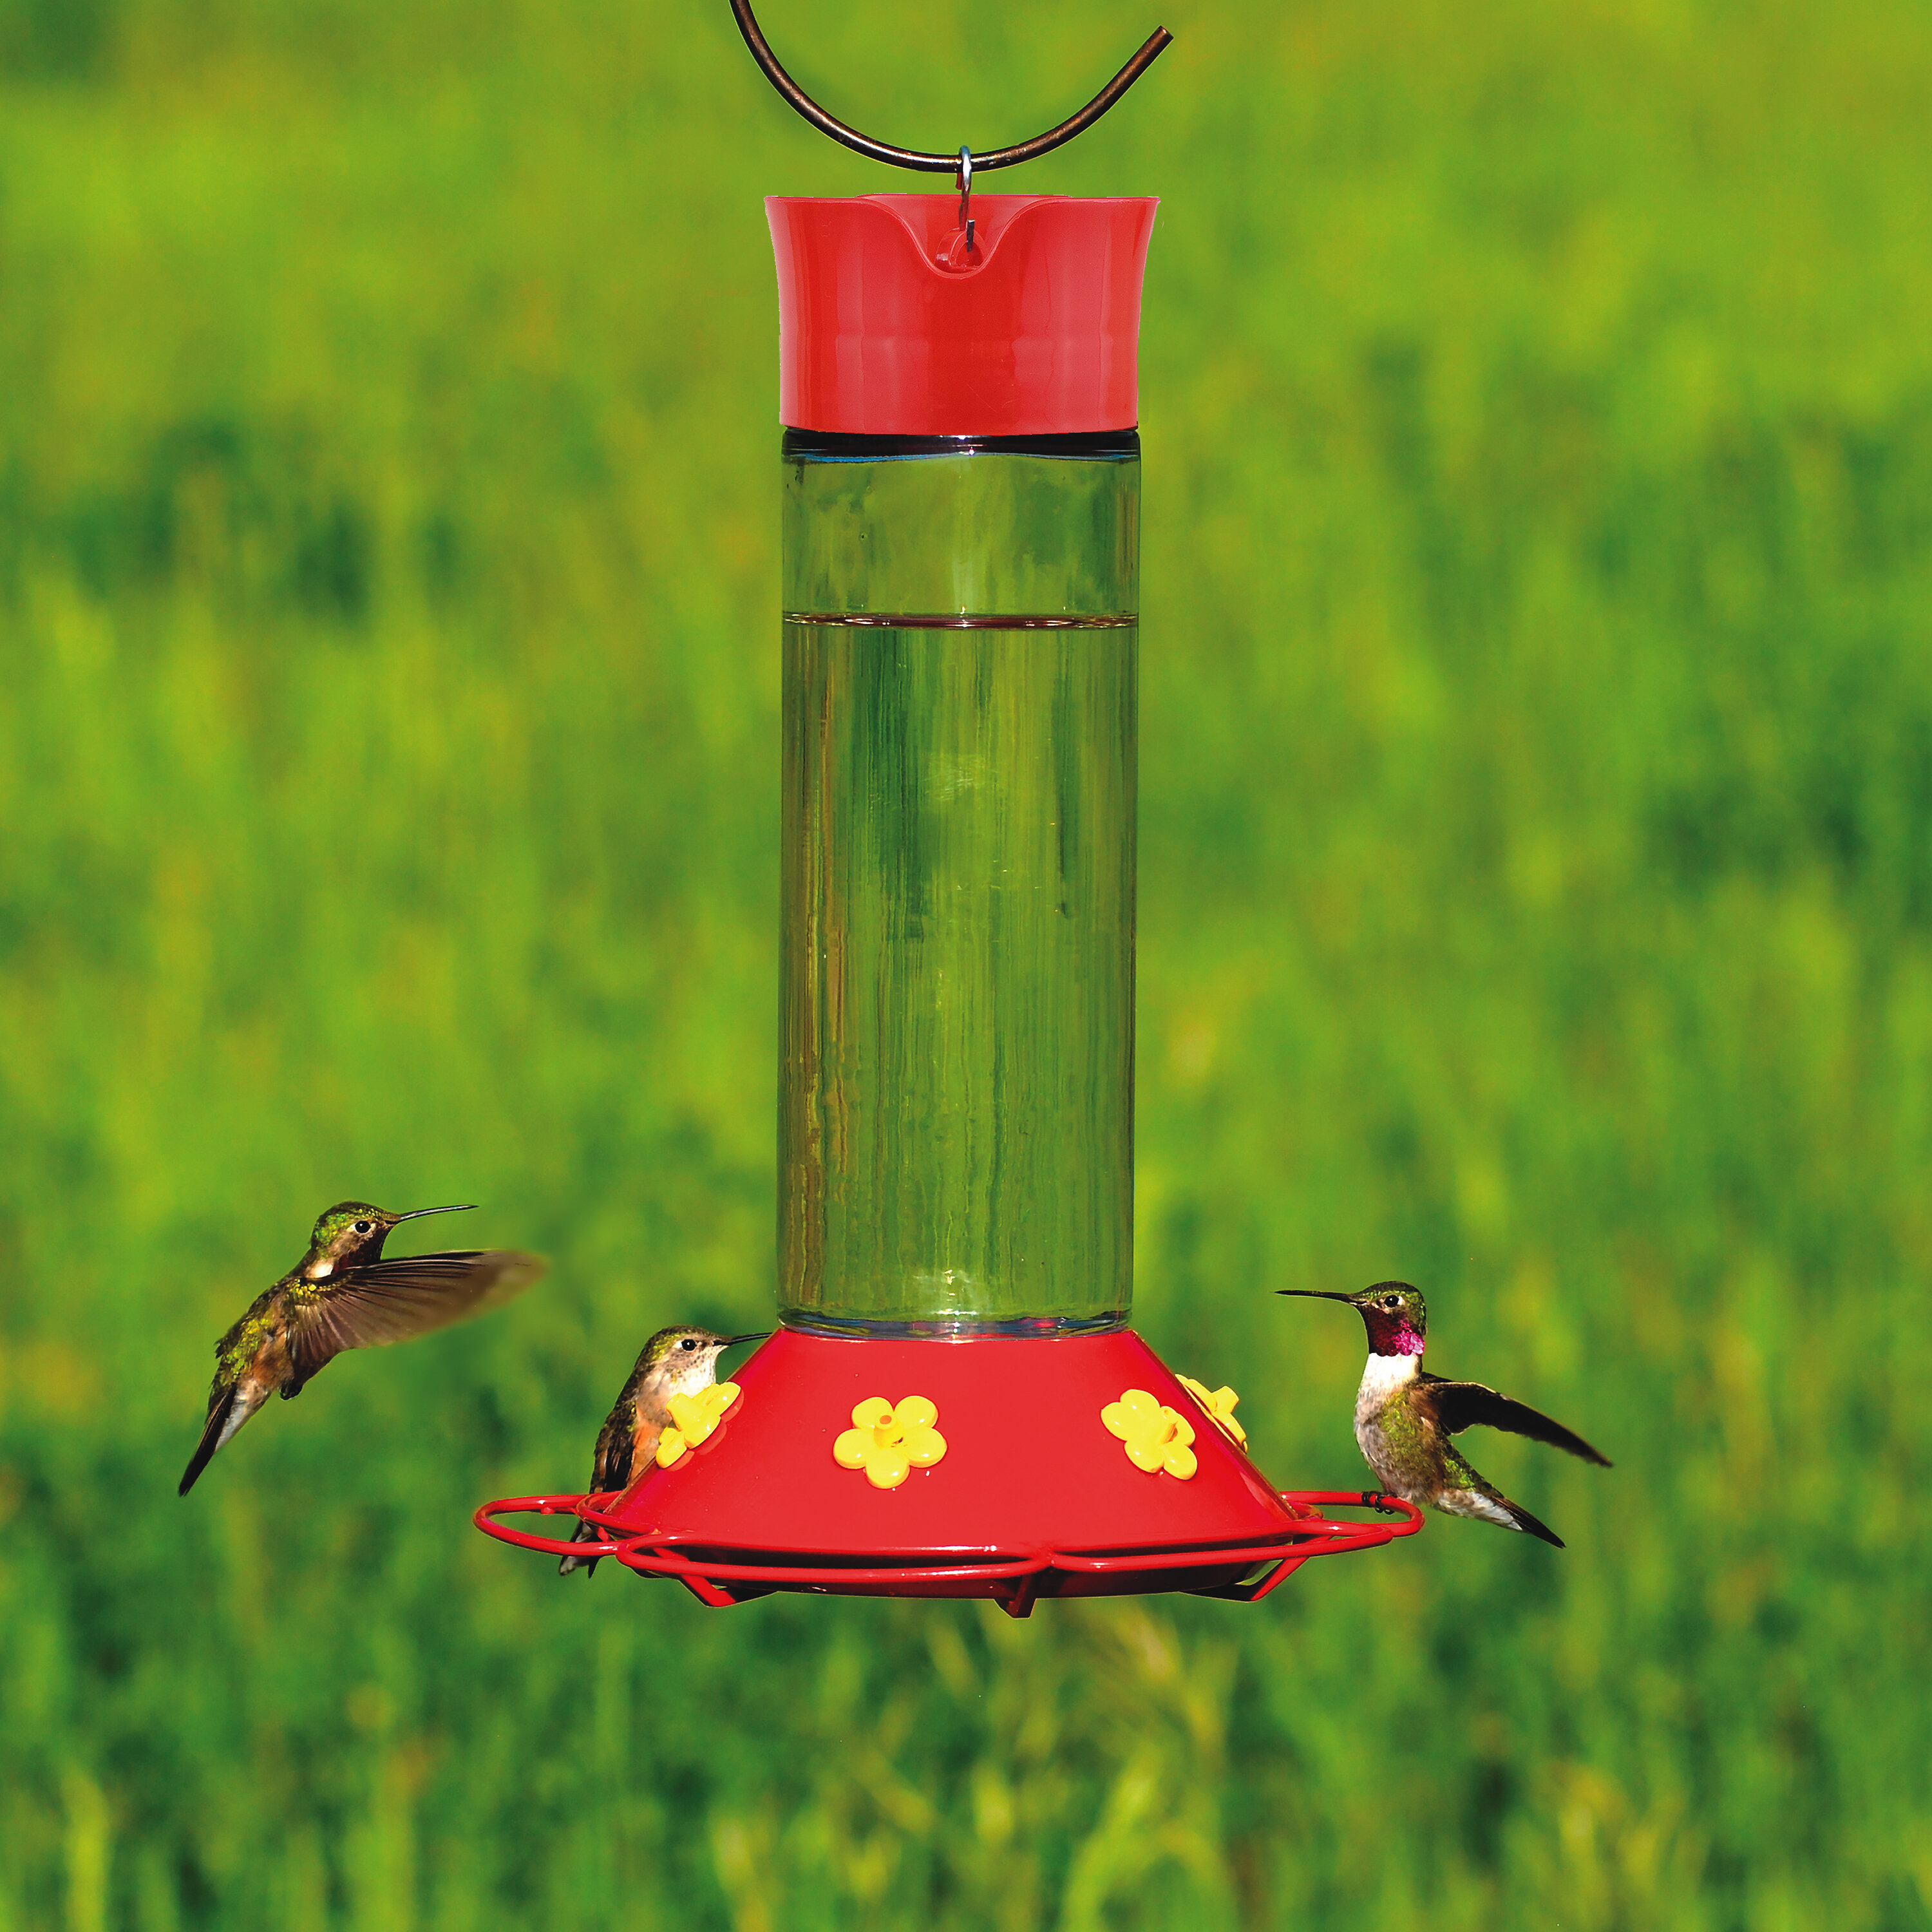 https://assets.wfcdn.com/im/47553392/compr-r85/1420/142056002/alsawwan-glass-hanging-hummingbird-feeder.jpg